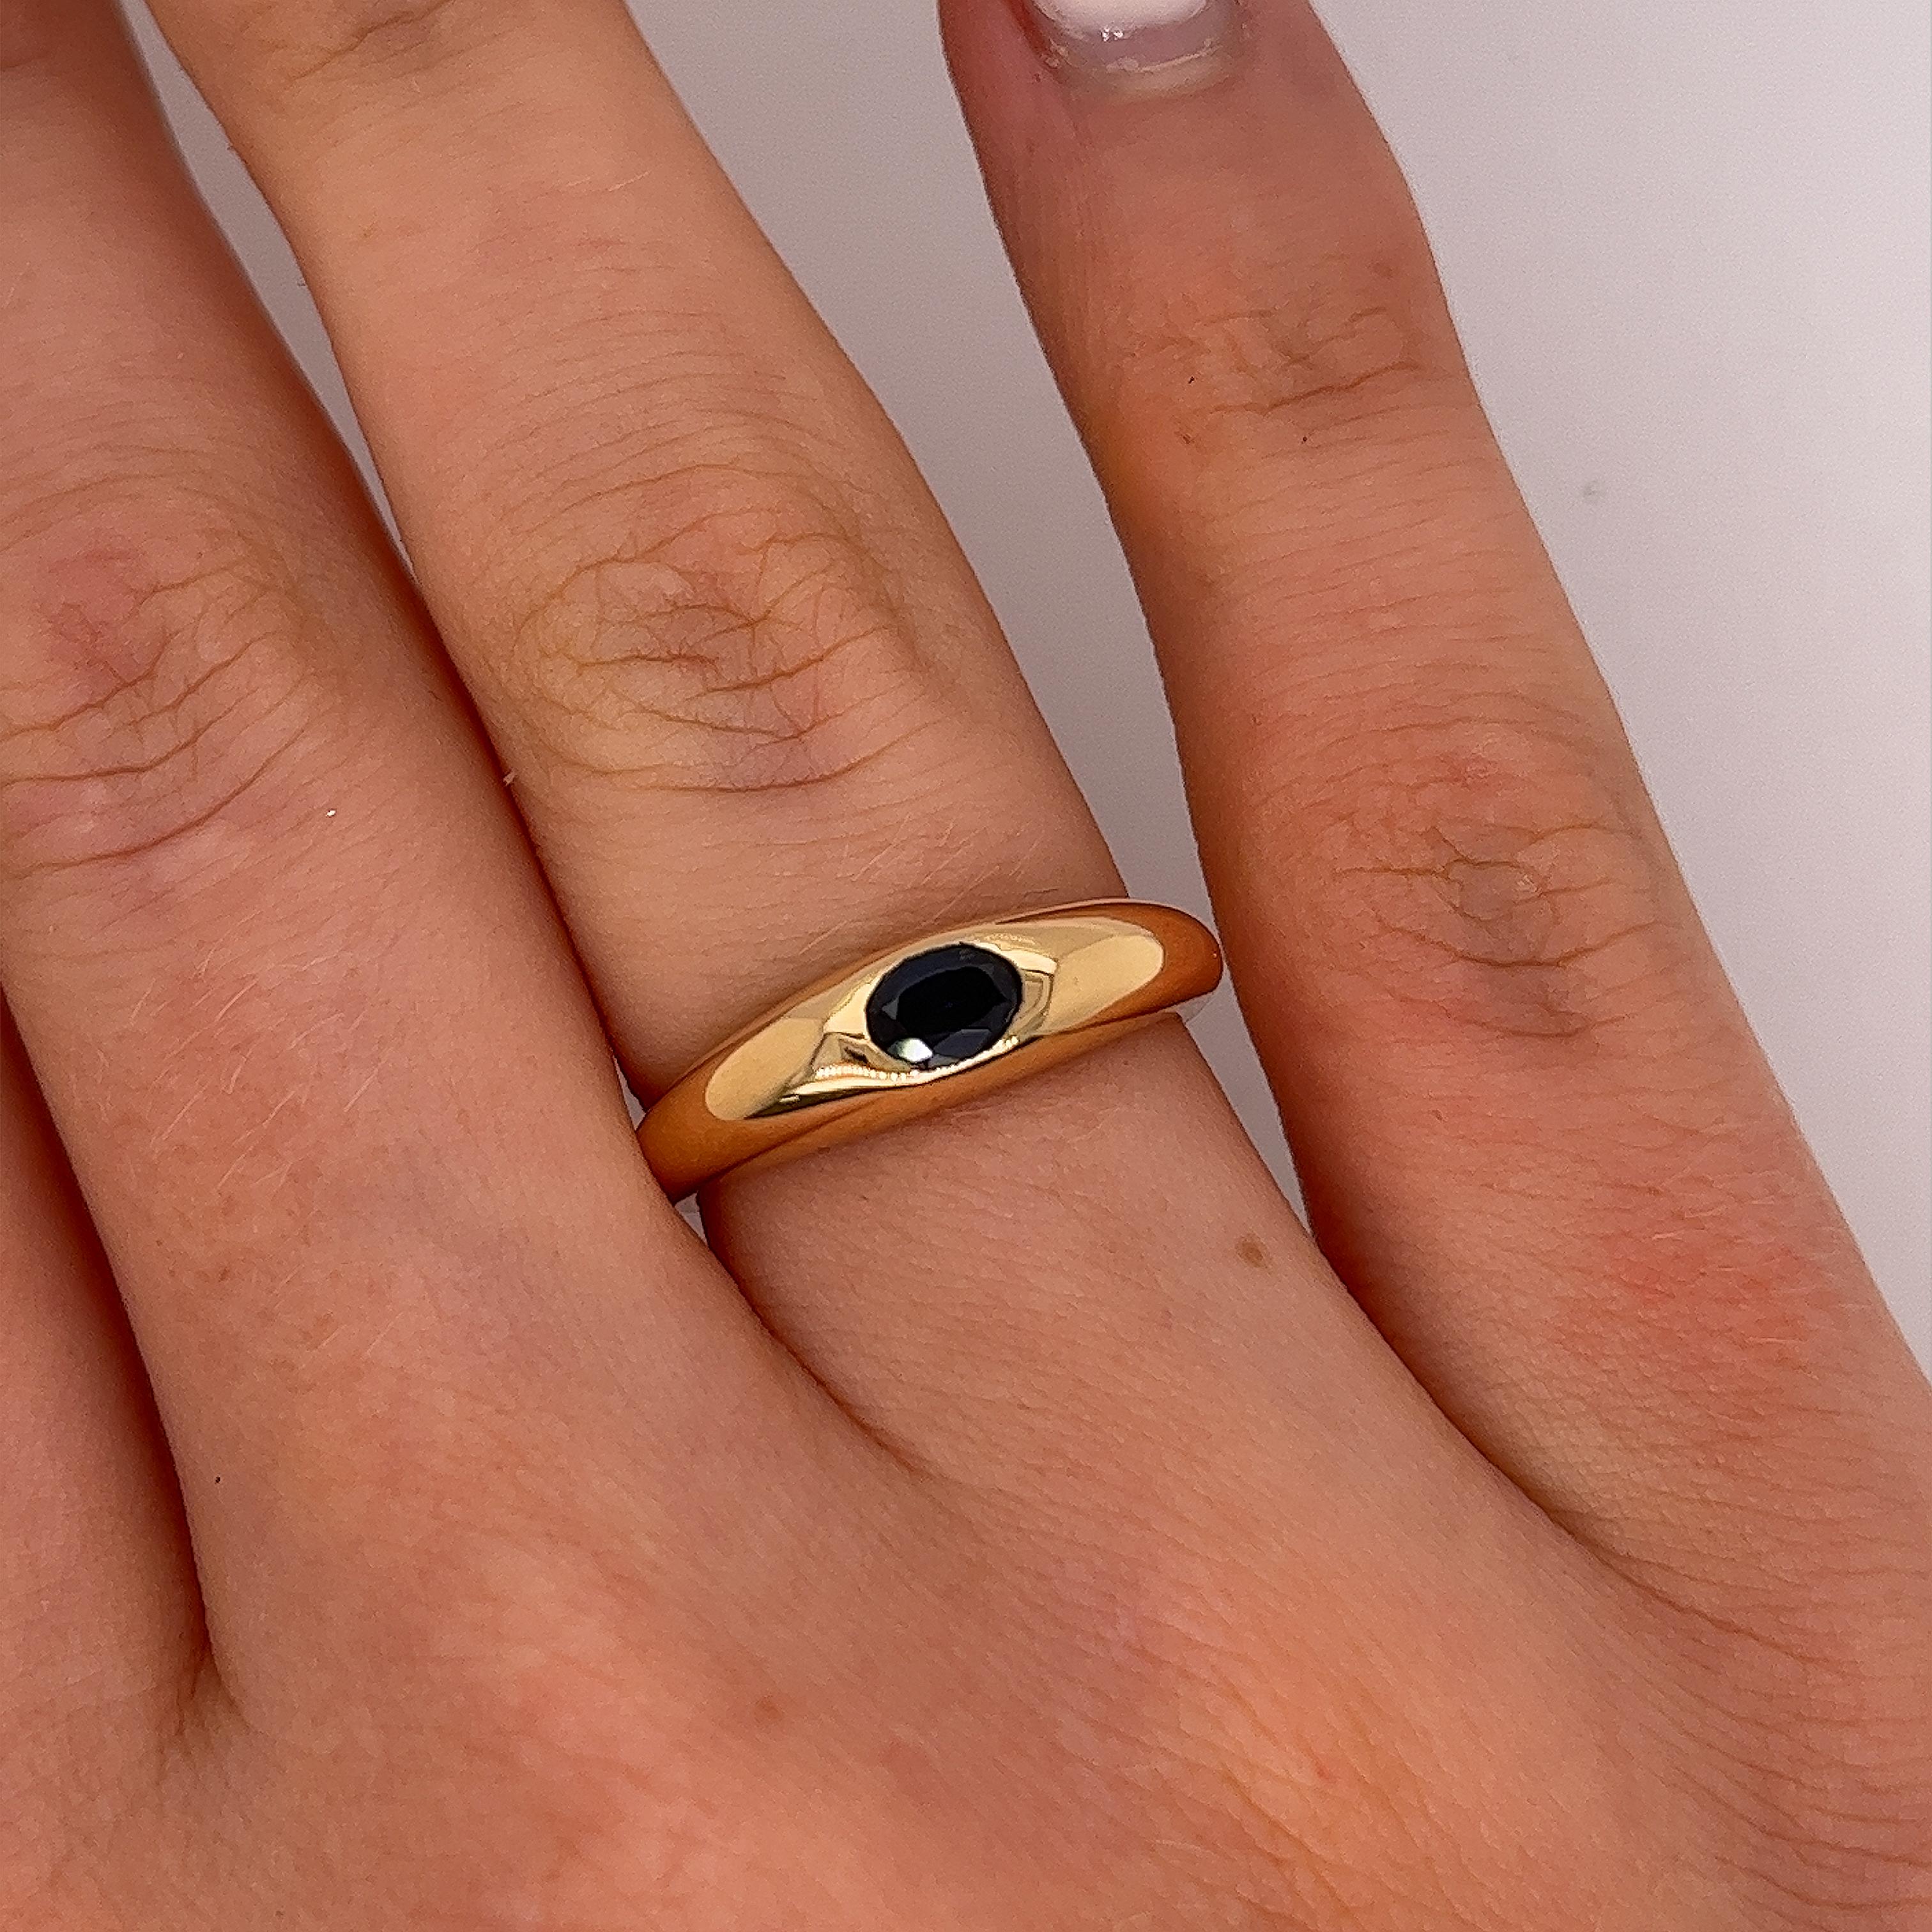 Neu von Jewellery Cave aus 18 Karat Gelbgold 
Single Stone Ring, besetzt mit einem ovalen 0,40ct natürlichen Saphir von hoher Qualität,
Der Ring ist eine perfekte Ergänzung zu jedem Ensemble 
und kann zu jeder Gelegenheit getragen